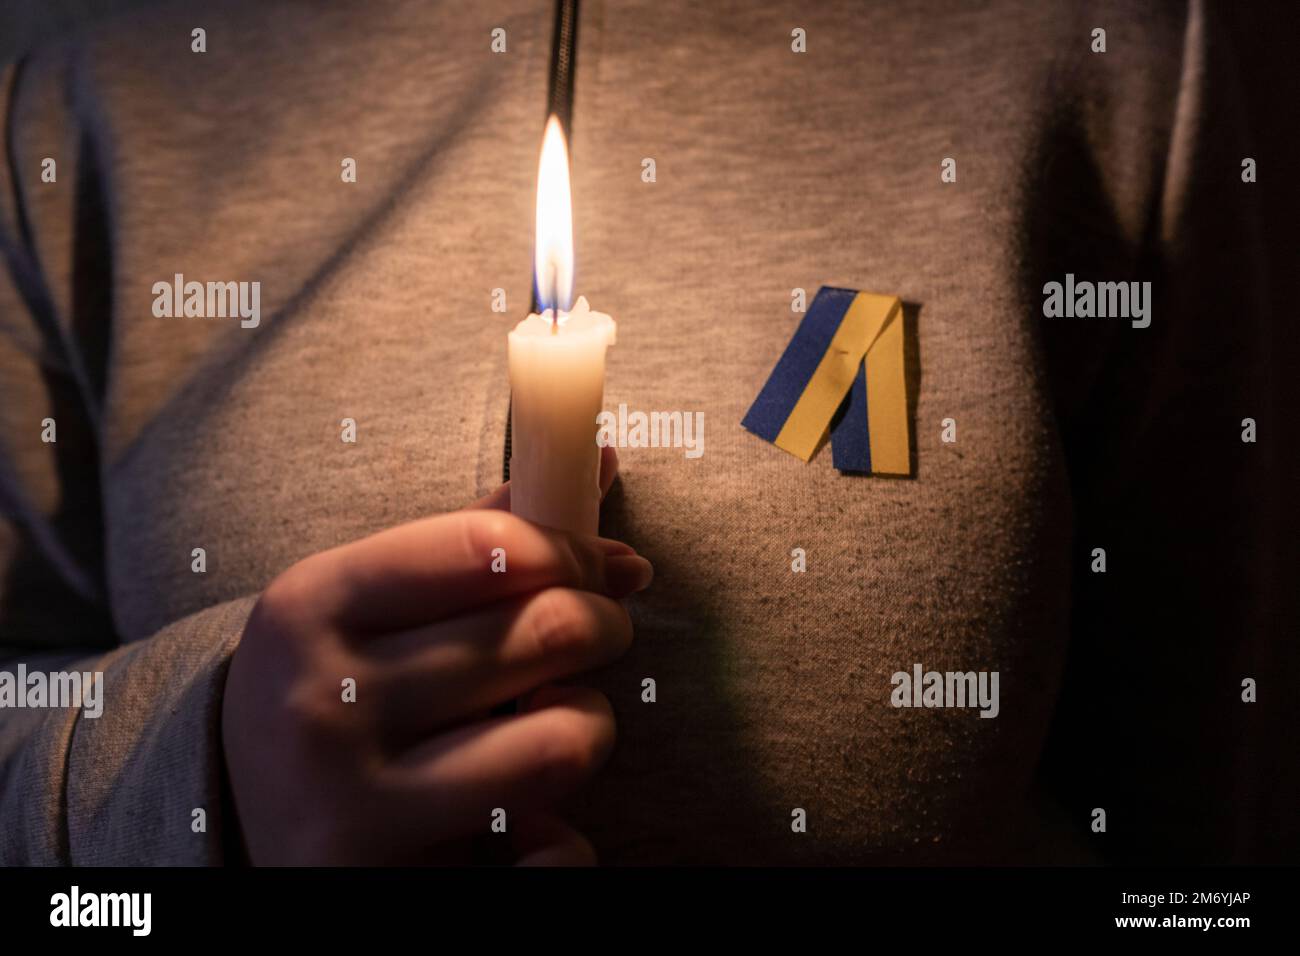 Ein Mädchen mit einem gelb-blauen Band (nationales Symbol der Ukraine) hält eine brennende Kerze in der Hand. Stromausfall. Energiekrise. Stromausfallkonzept Stockfoto